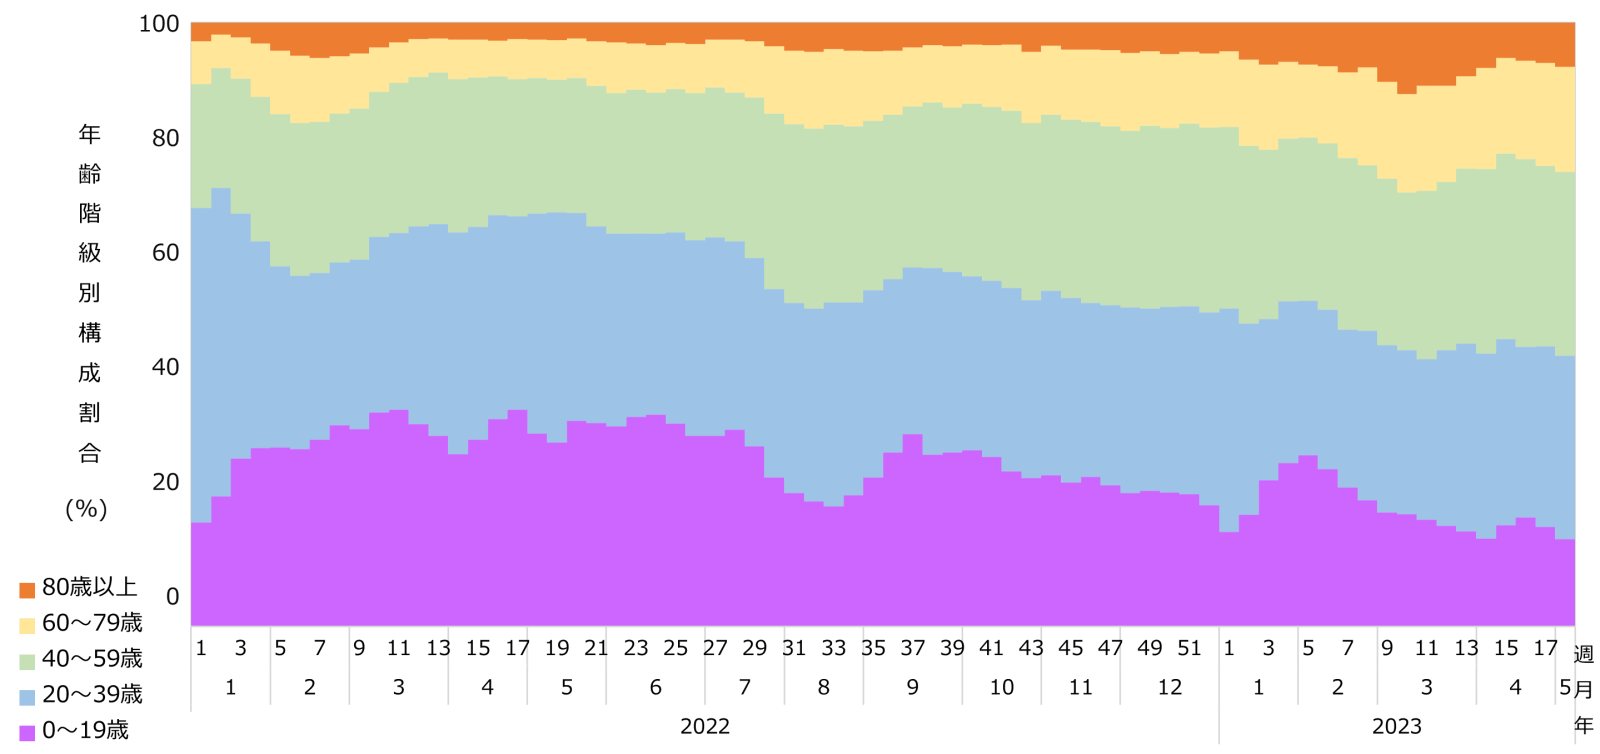 週別・年齢階級別 報告数の構成割合のグラフ